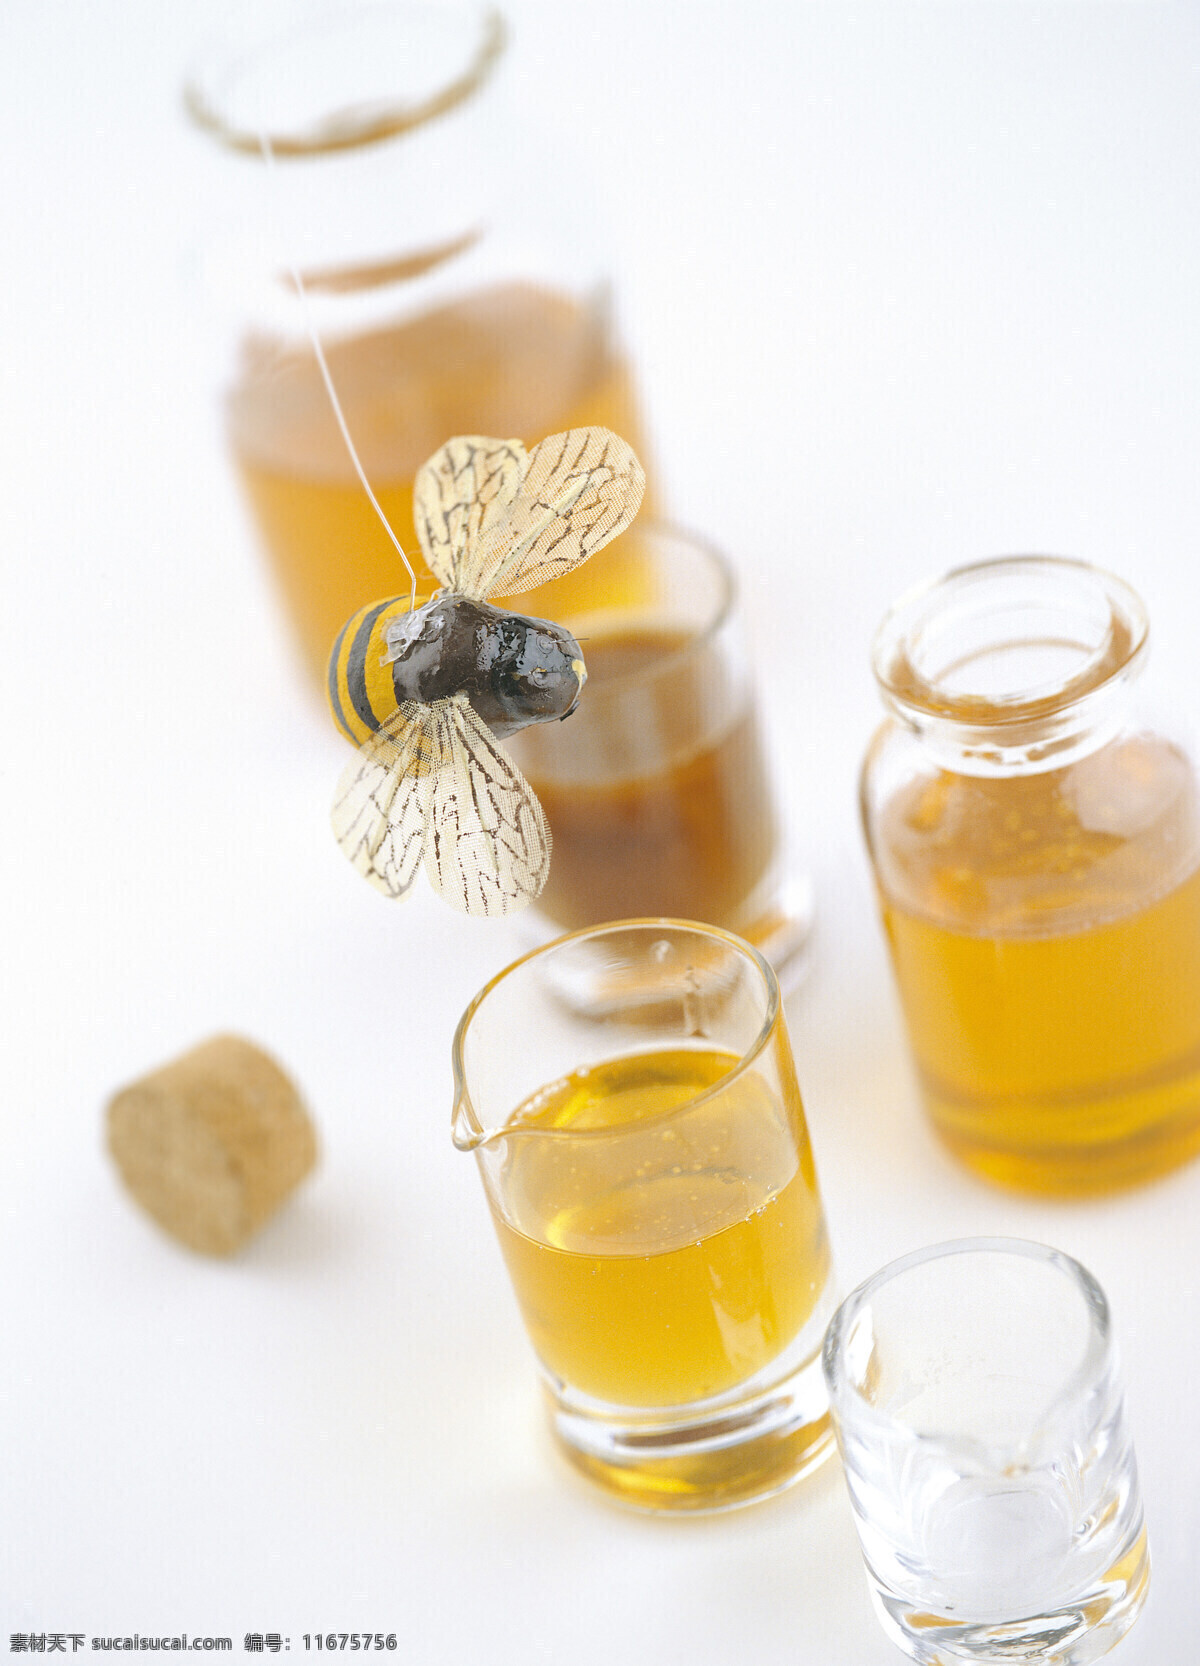 高清 生活 写照 杯子 蜂蜜 高清下载 蜜蜂 生活用品 蜜糖 风景 旅游餐饮